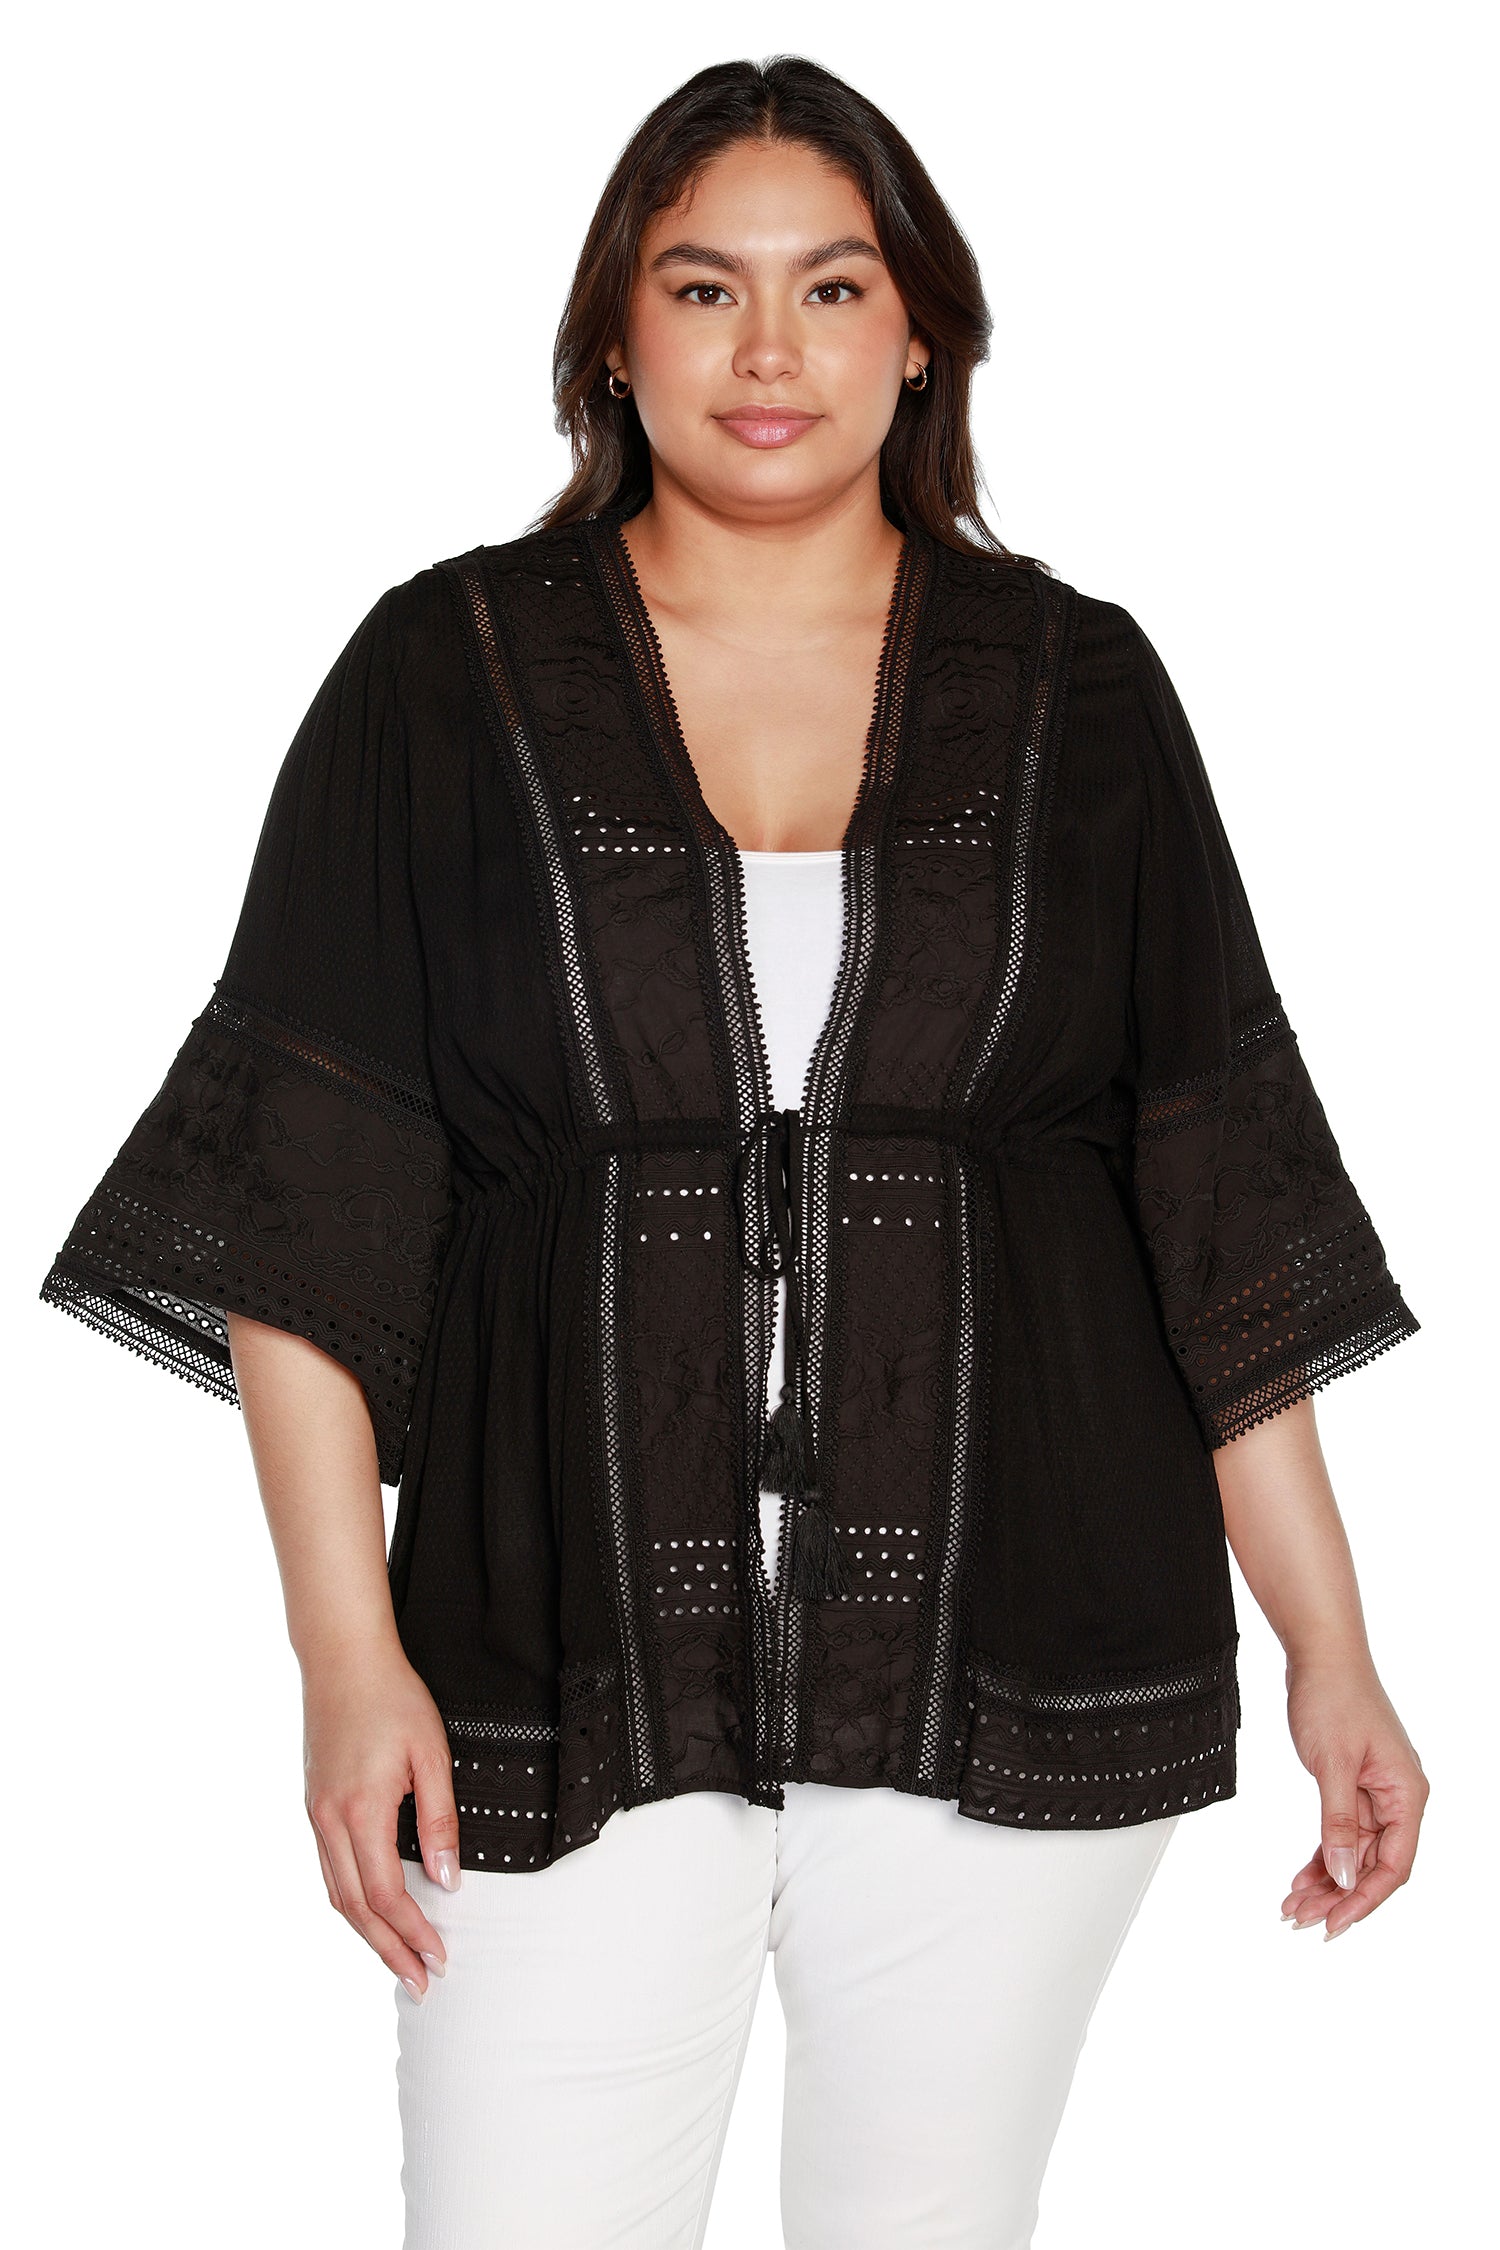 Kimono de algodón para mujer con encaje y bordado con ojales | con curvas